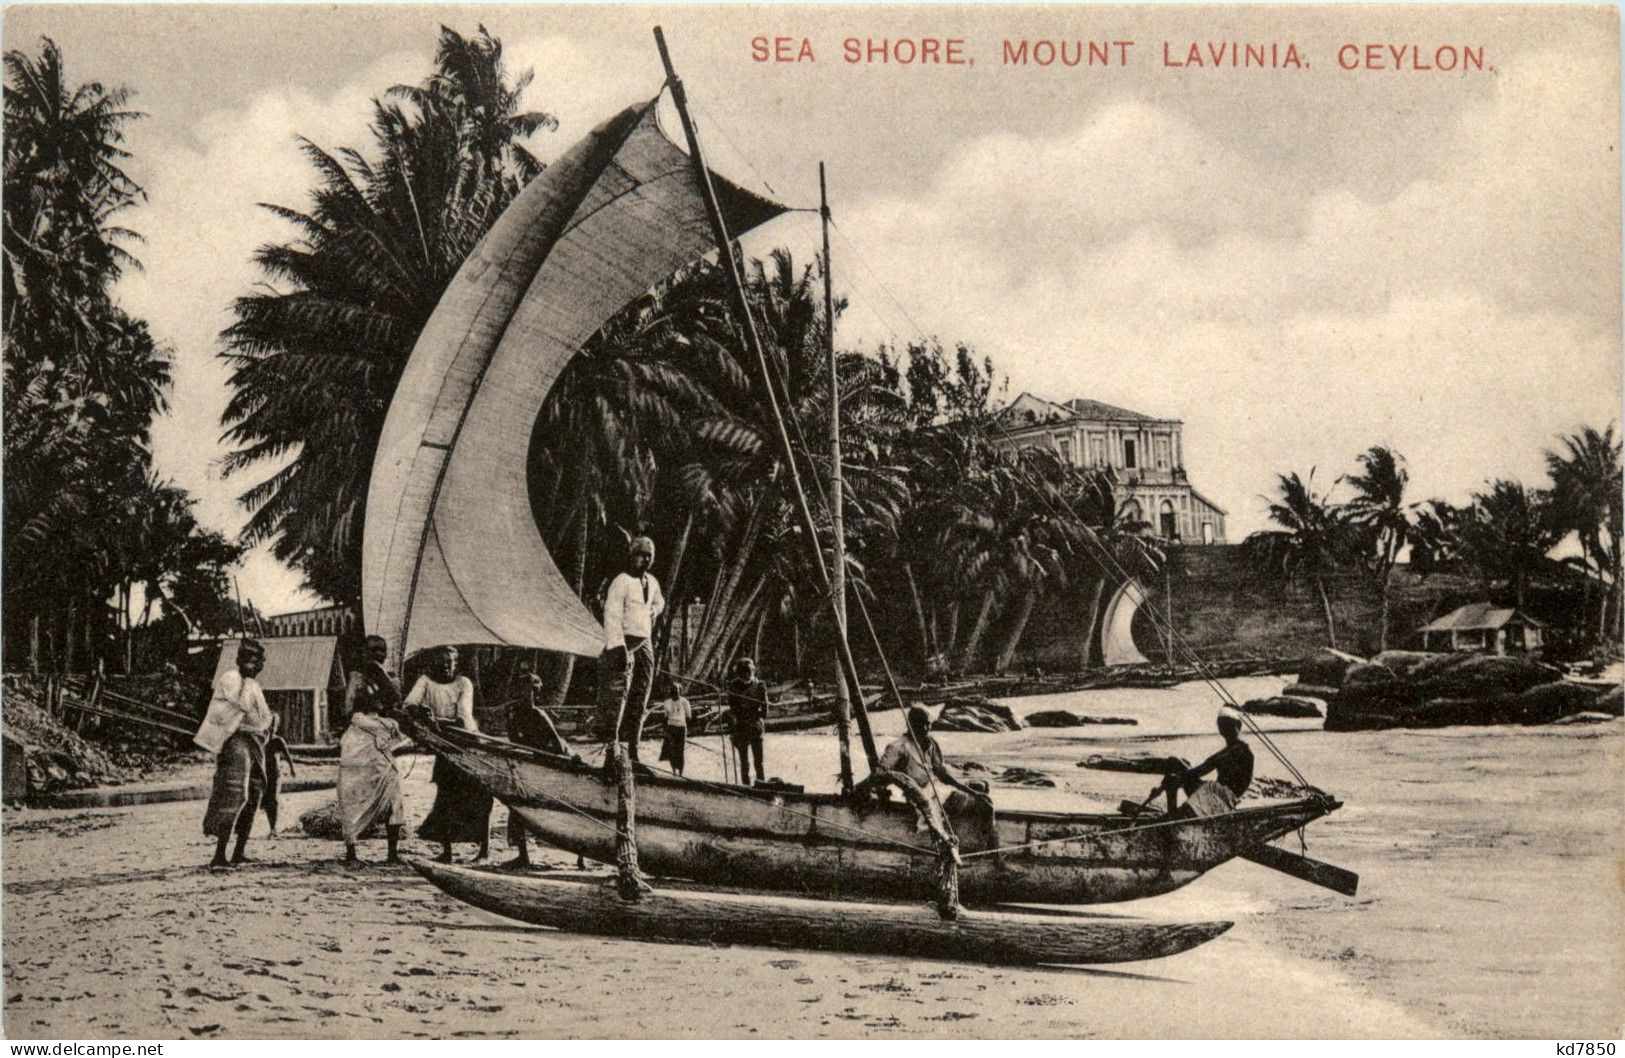 Mount Lavinia - Sea Shore - Sri Lanka (Ceylon)